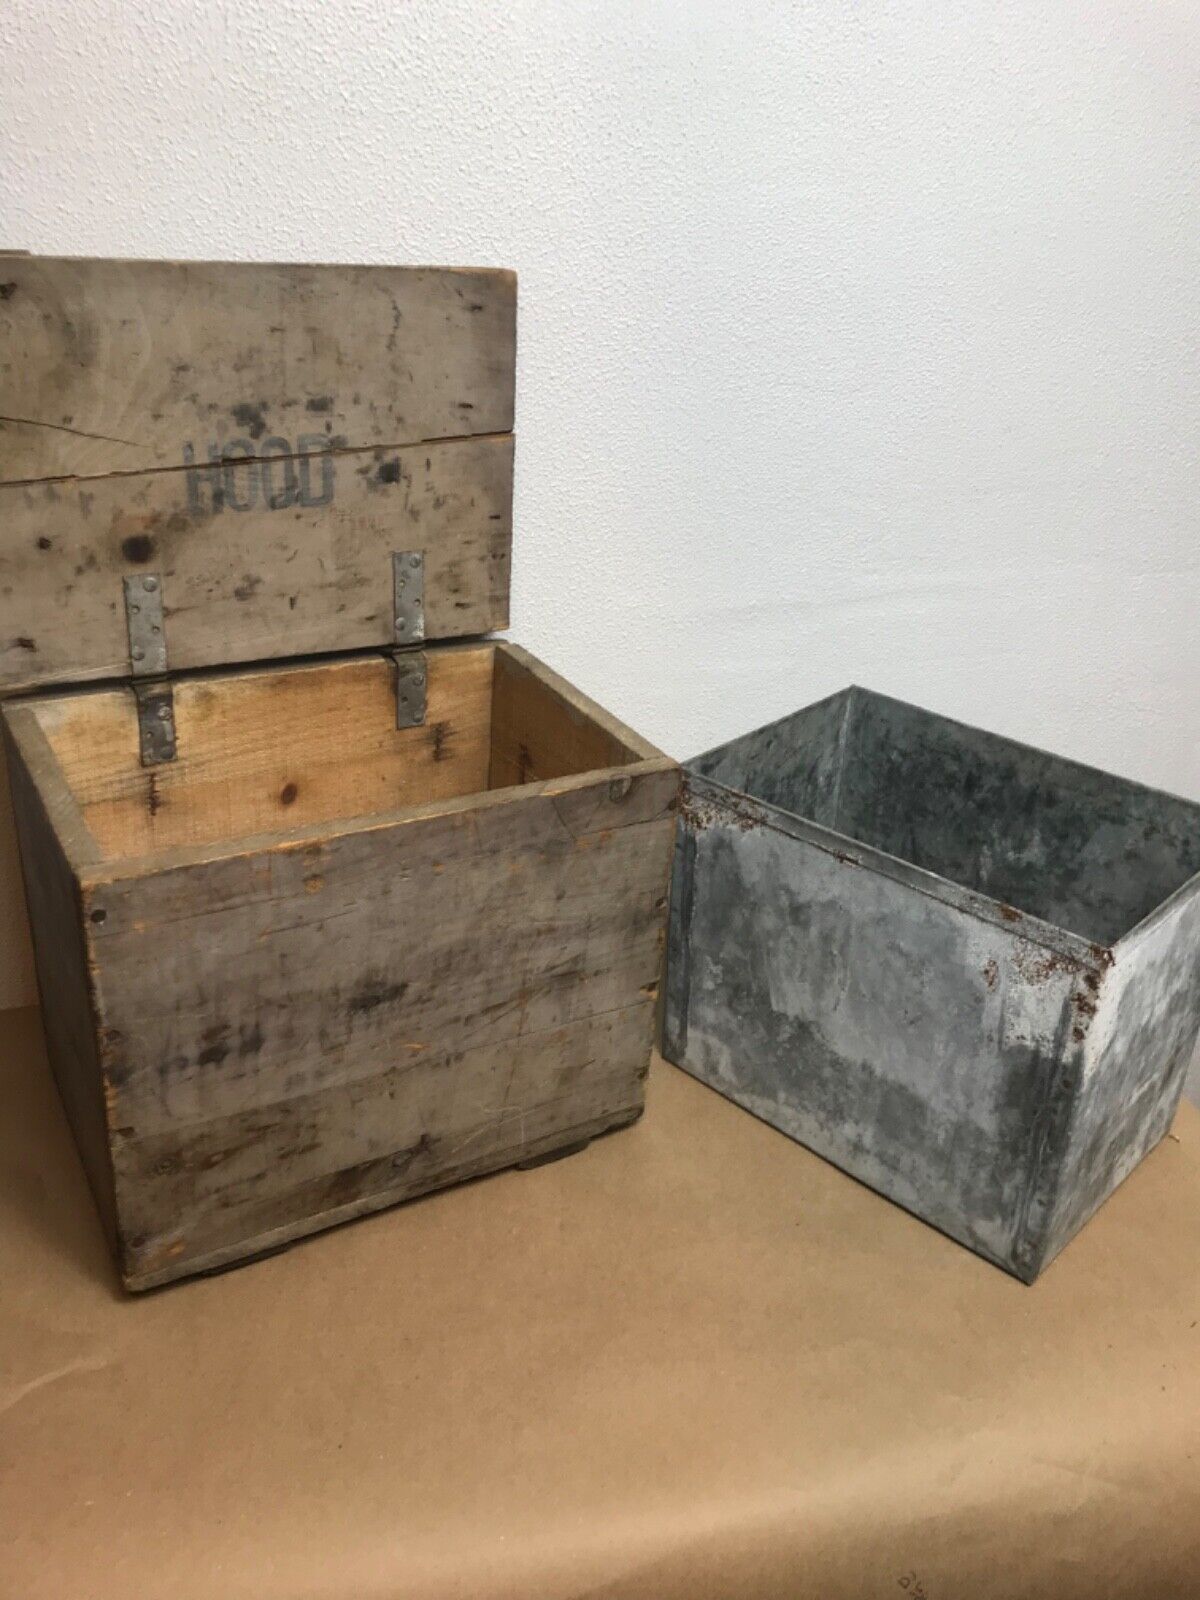 Antique wooden HOOD milk crate with lid, original hinges/ steel insert primitive